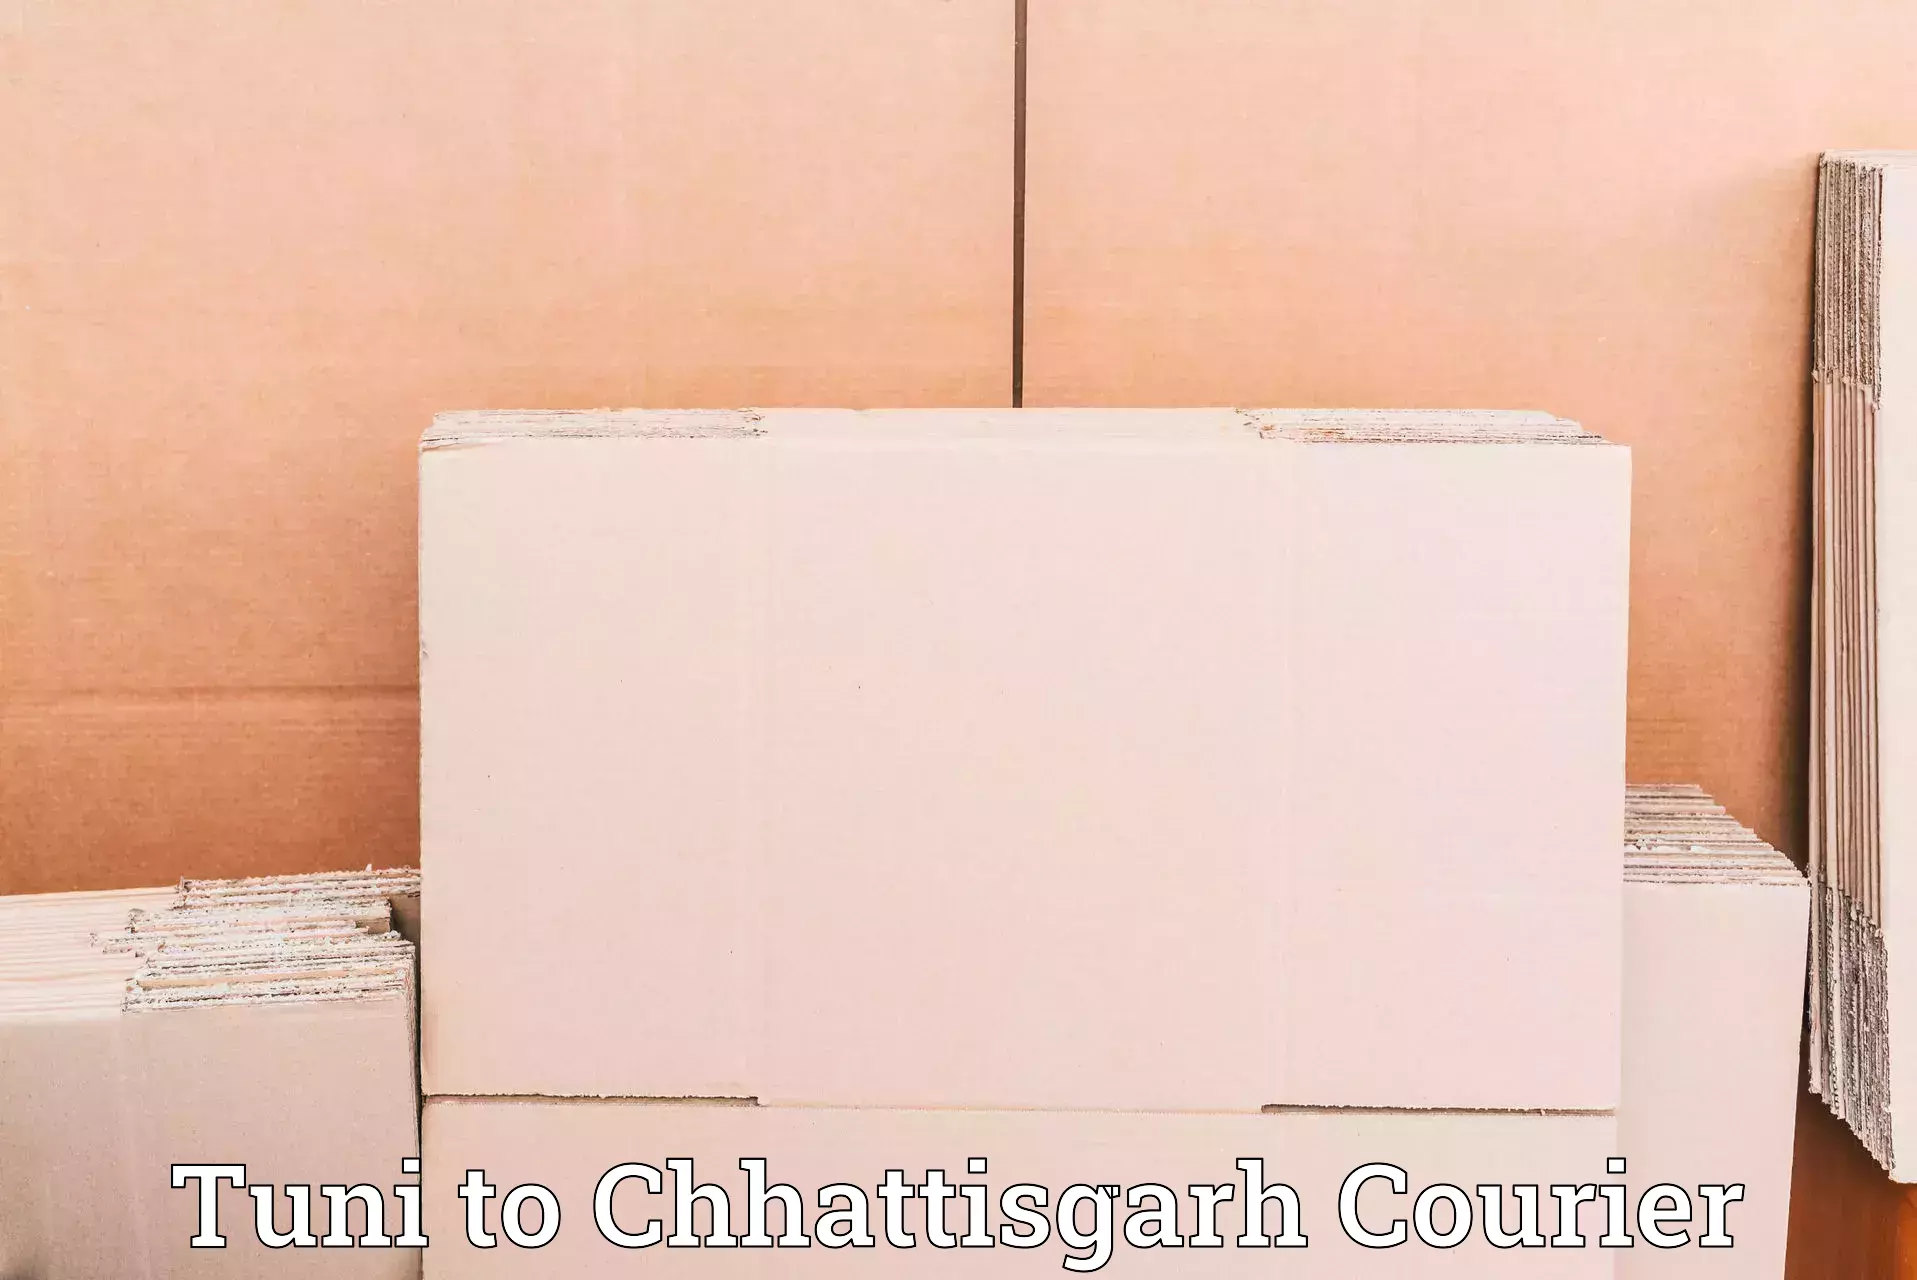 Specialized courier services Tuni to Chhattisgarh